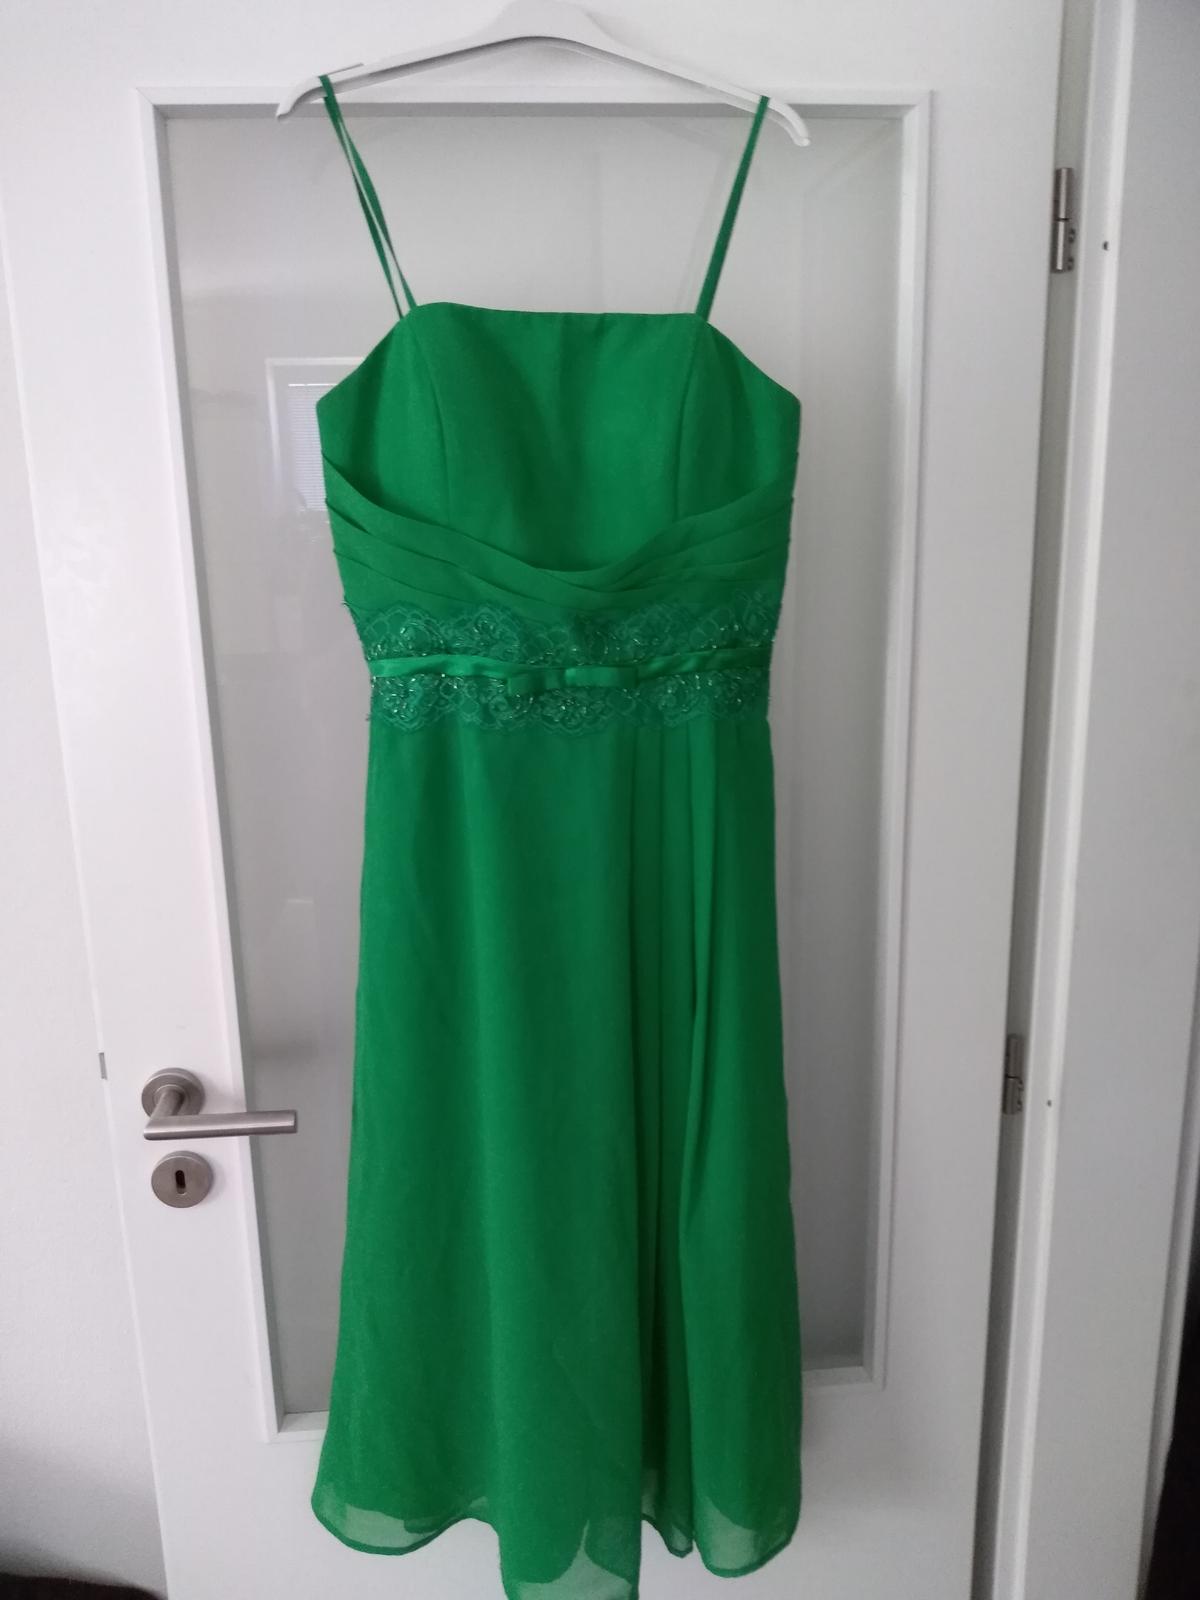 Zelené smaragdové šaty - Obrázek č. 1